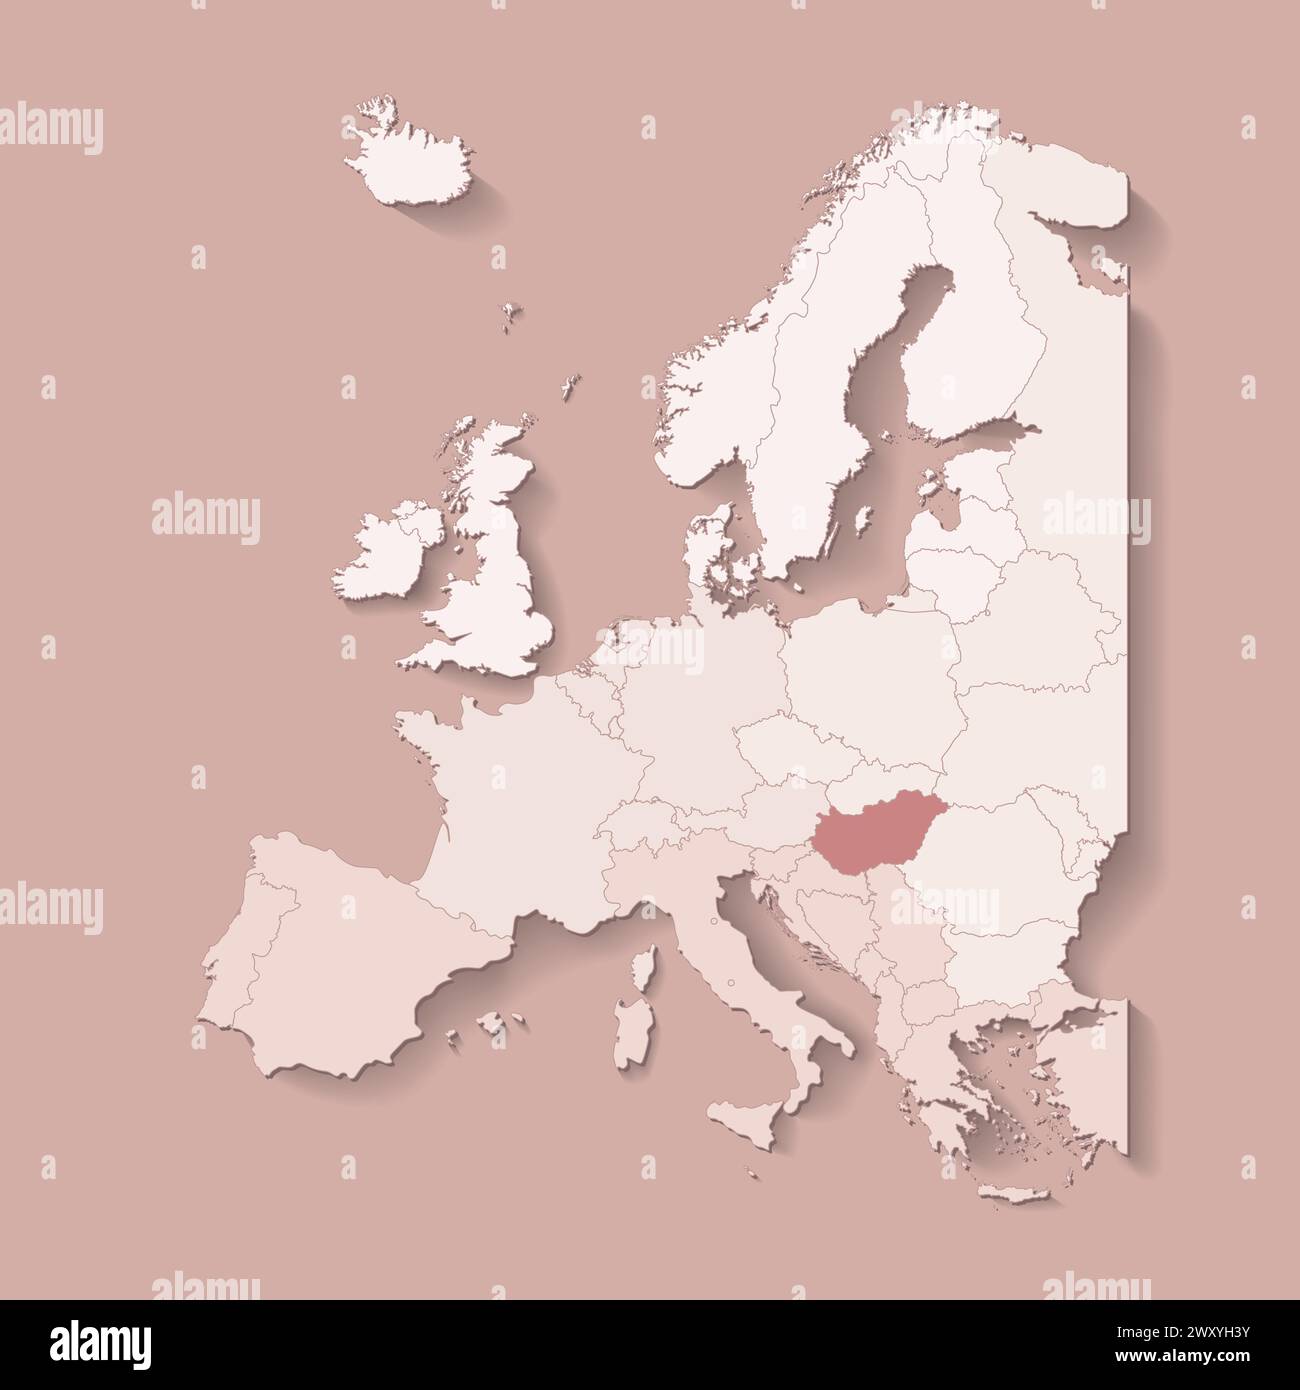 Illustrazione vettoriale con terra europea con confini di stati e paese contrassegnato Ungheria. Mappa politica di colore marrone con occidentale, sud e così via Illustrazione Vettoriale